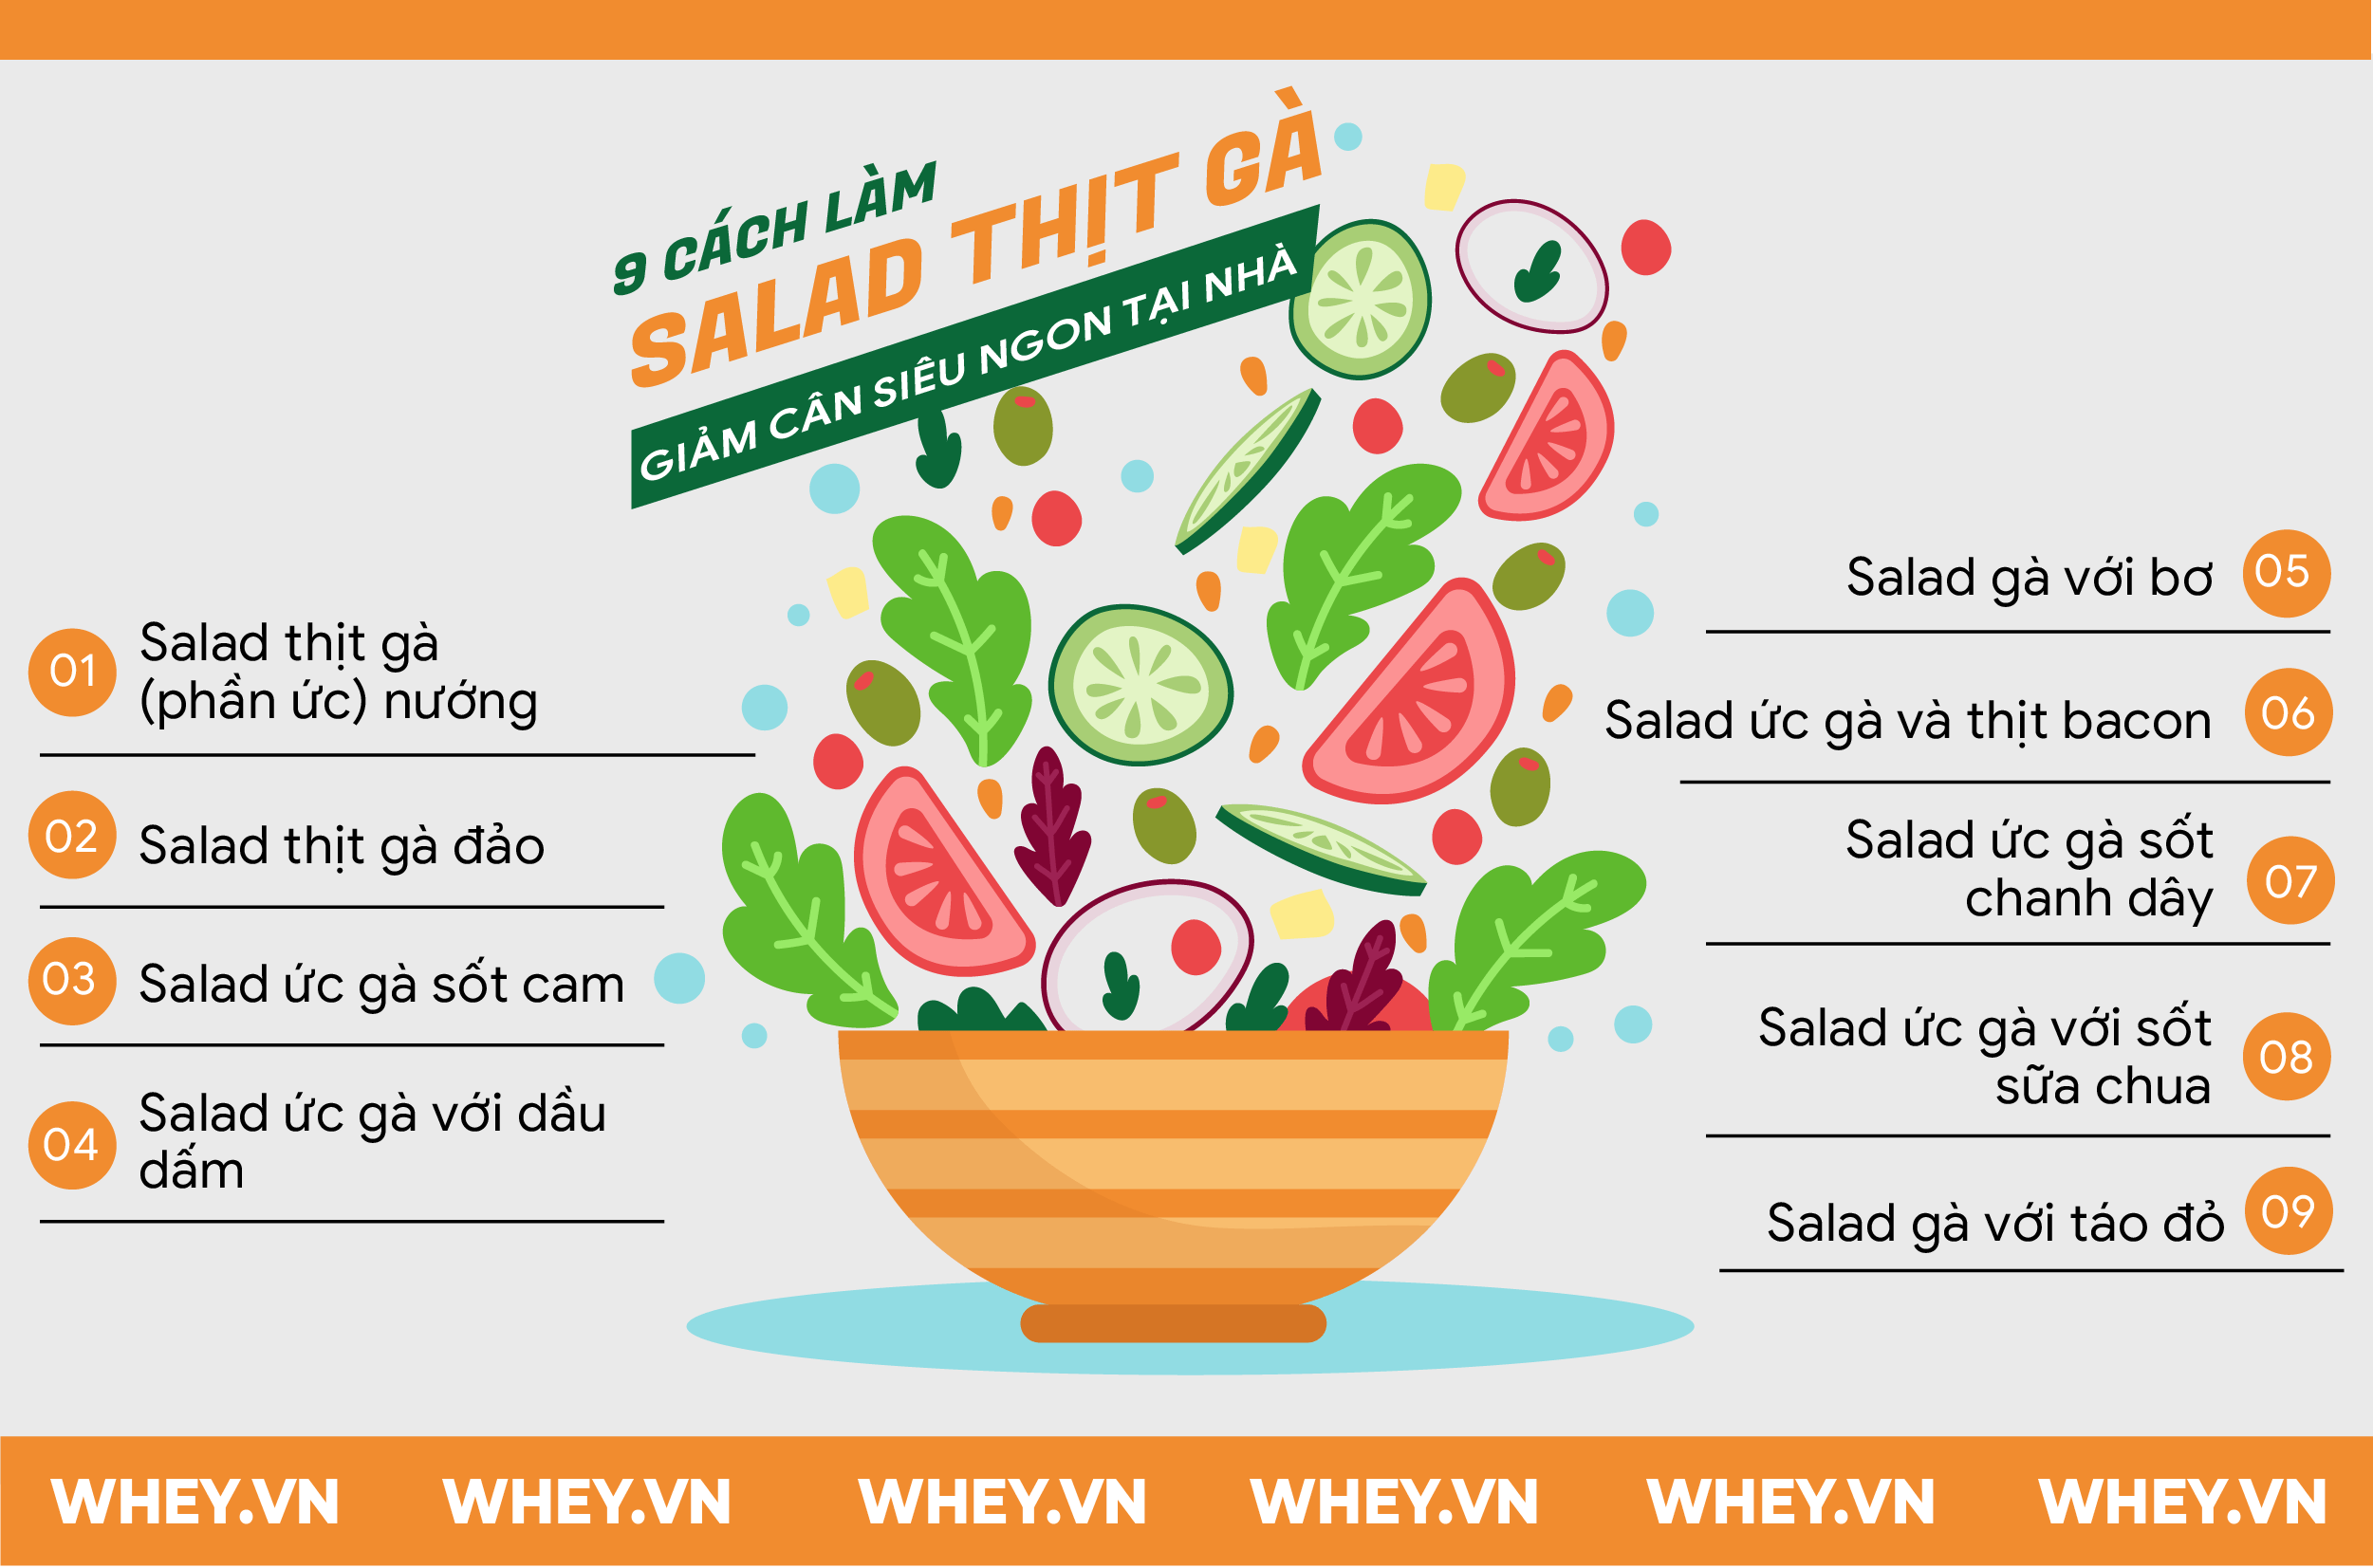 Đa dang thực đơn với 9 Cách làm Salad thịt gà giảm cân siêu ngon tại nhà